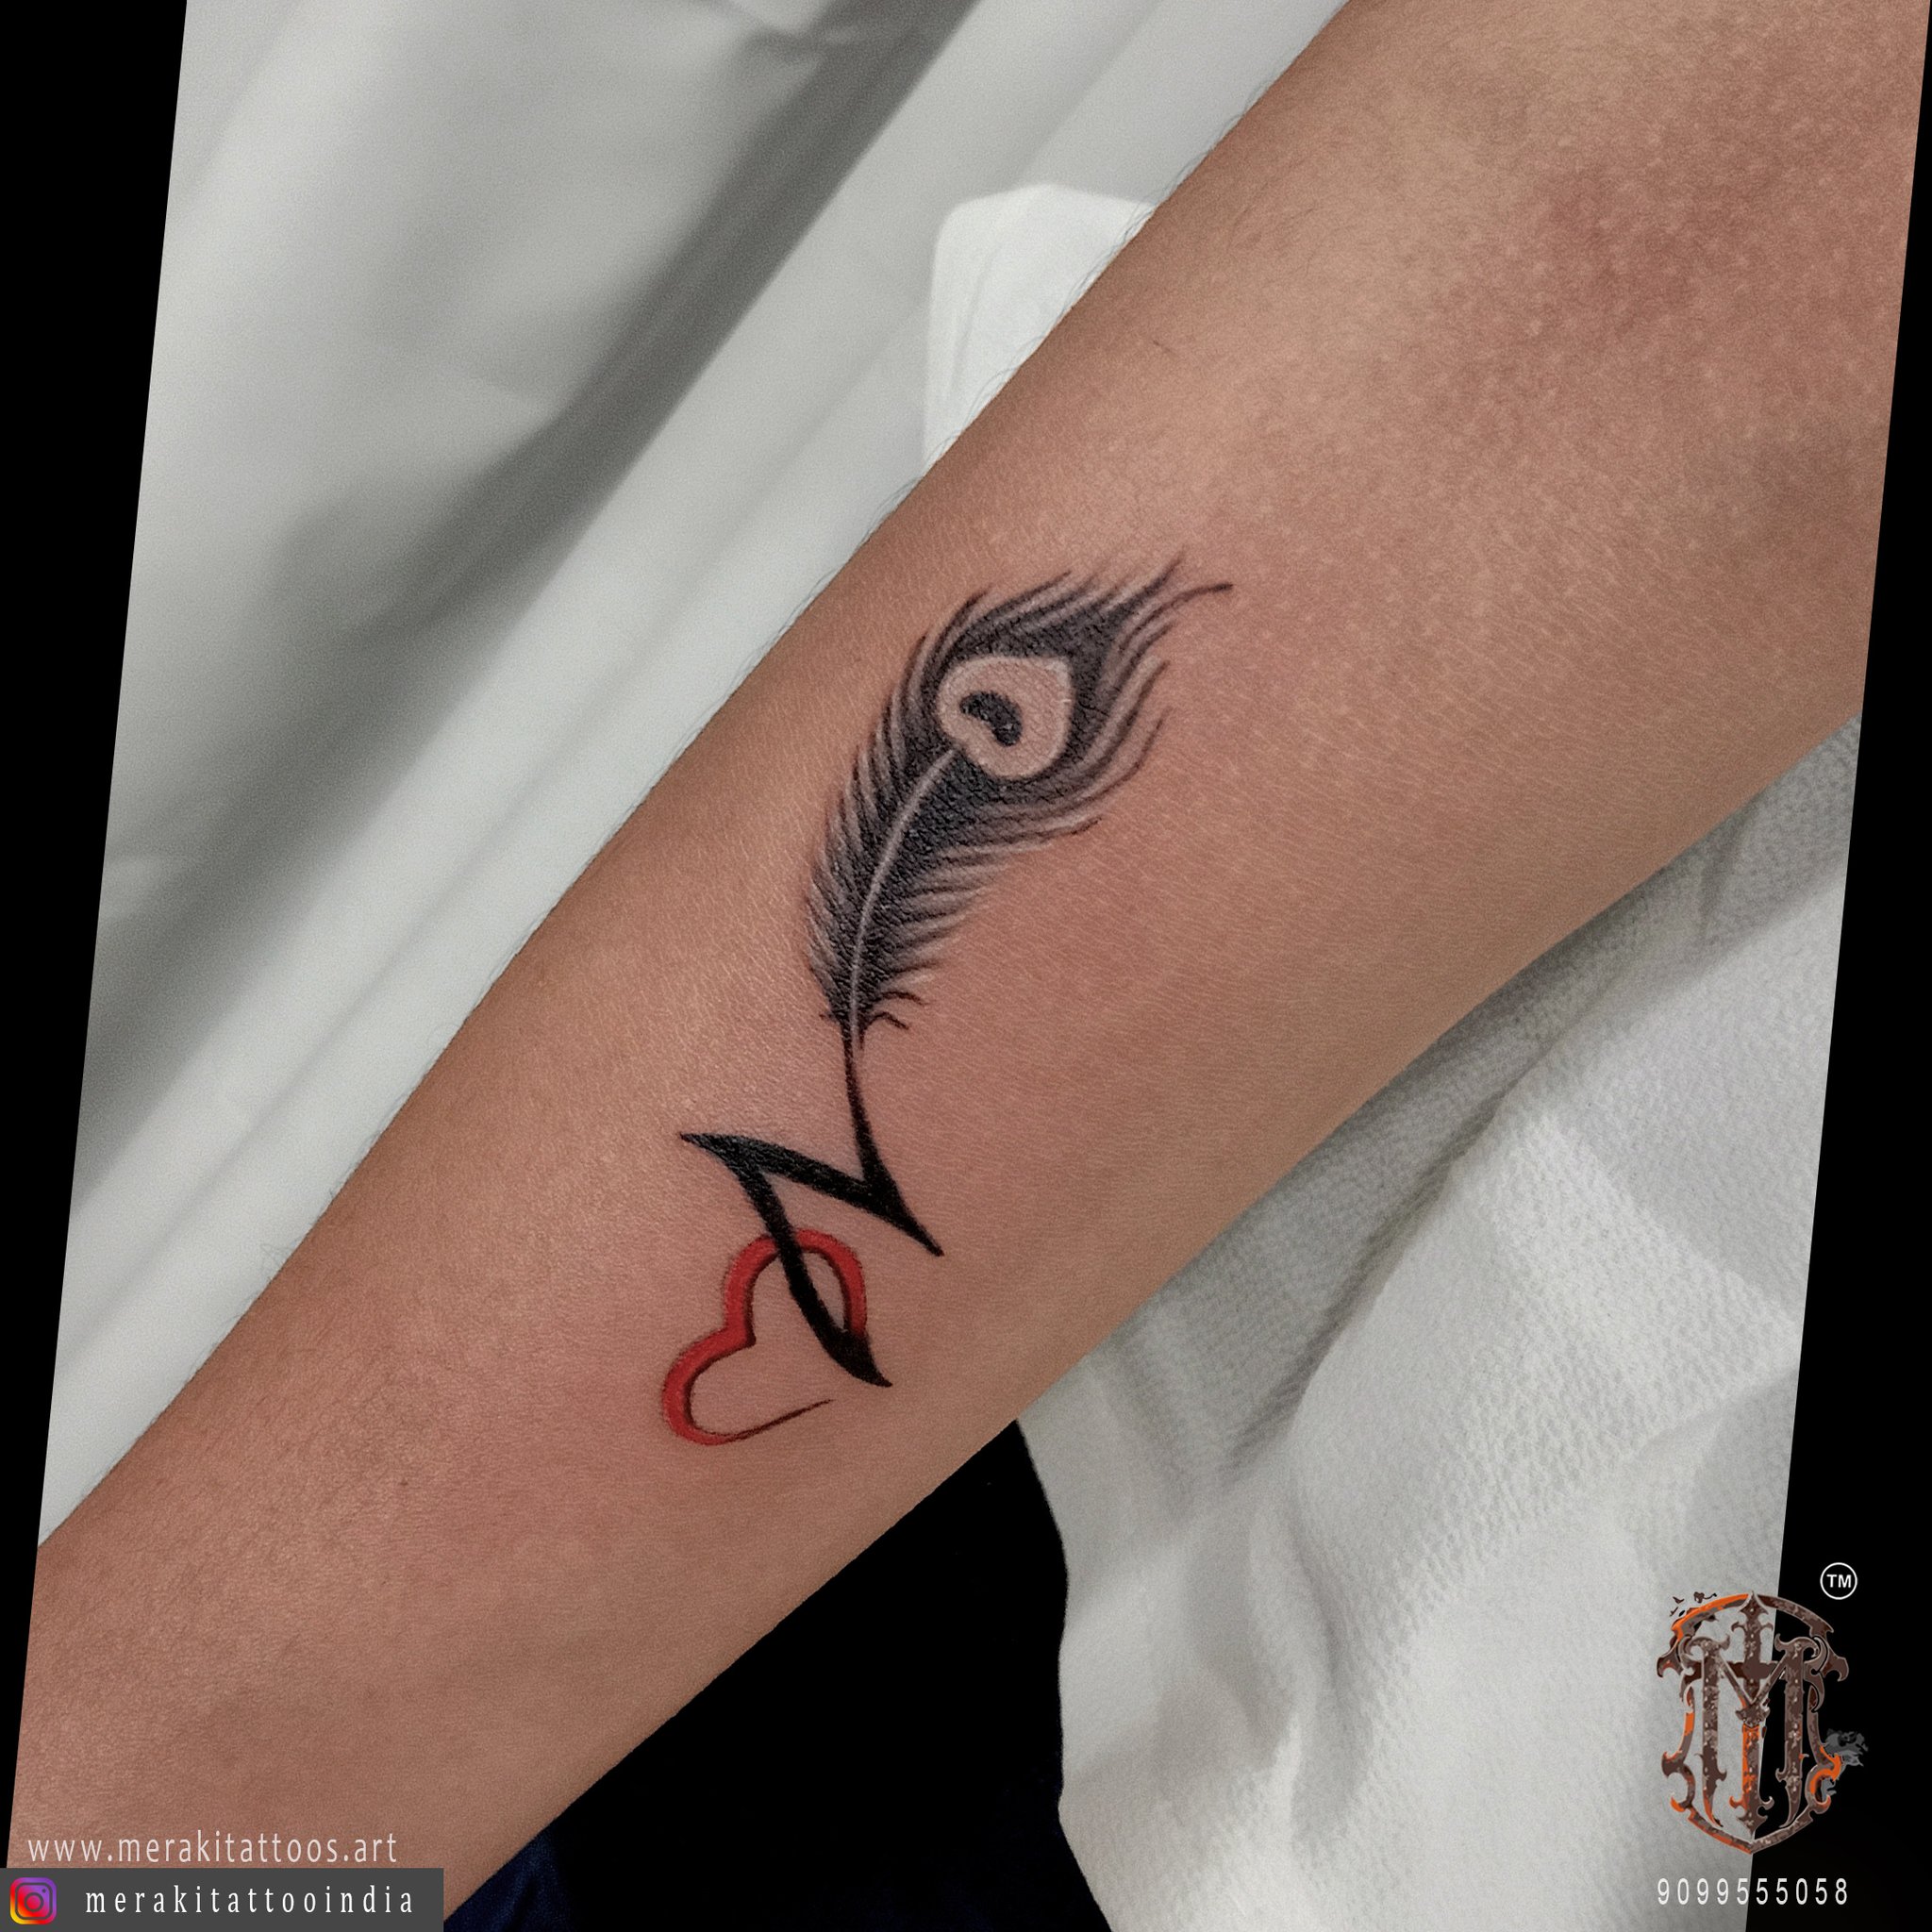 Top 20 Lord KRISHNA Tattoo ideas  krishna tatoo  tattoo designs  YouTube